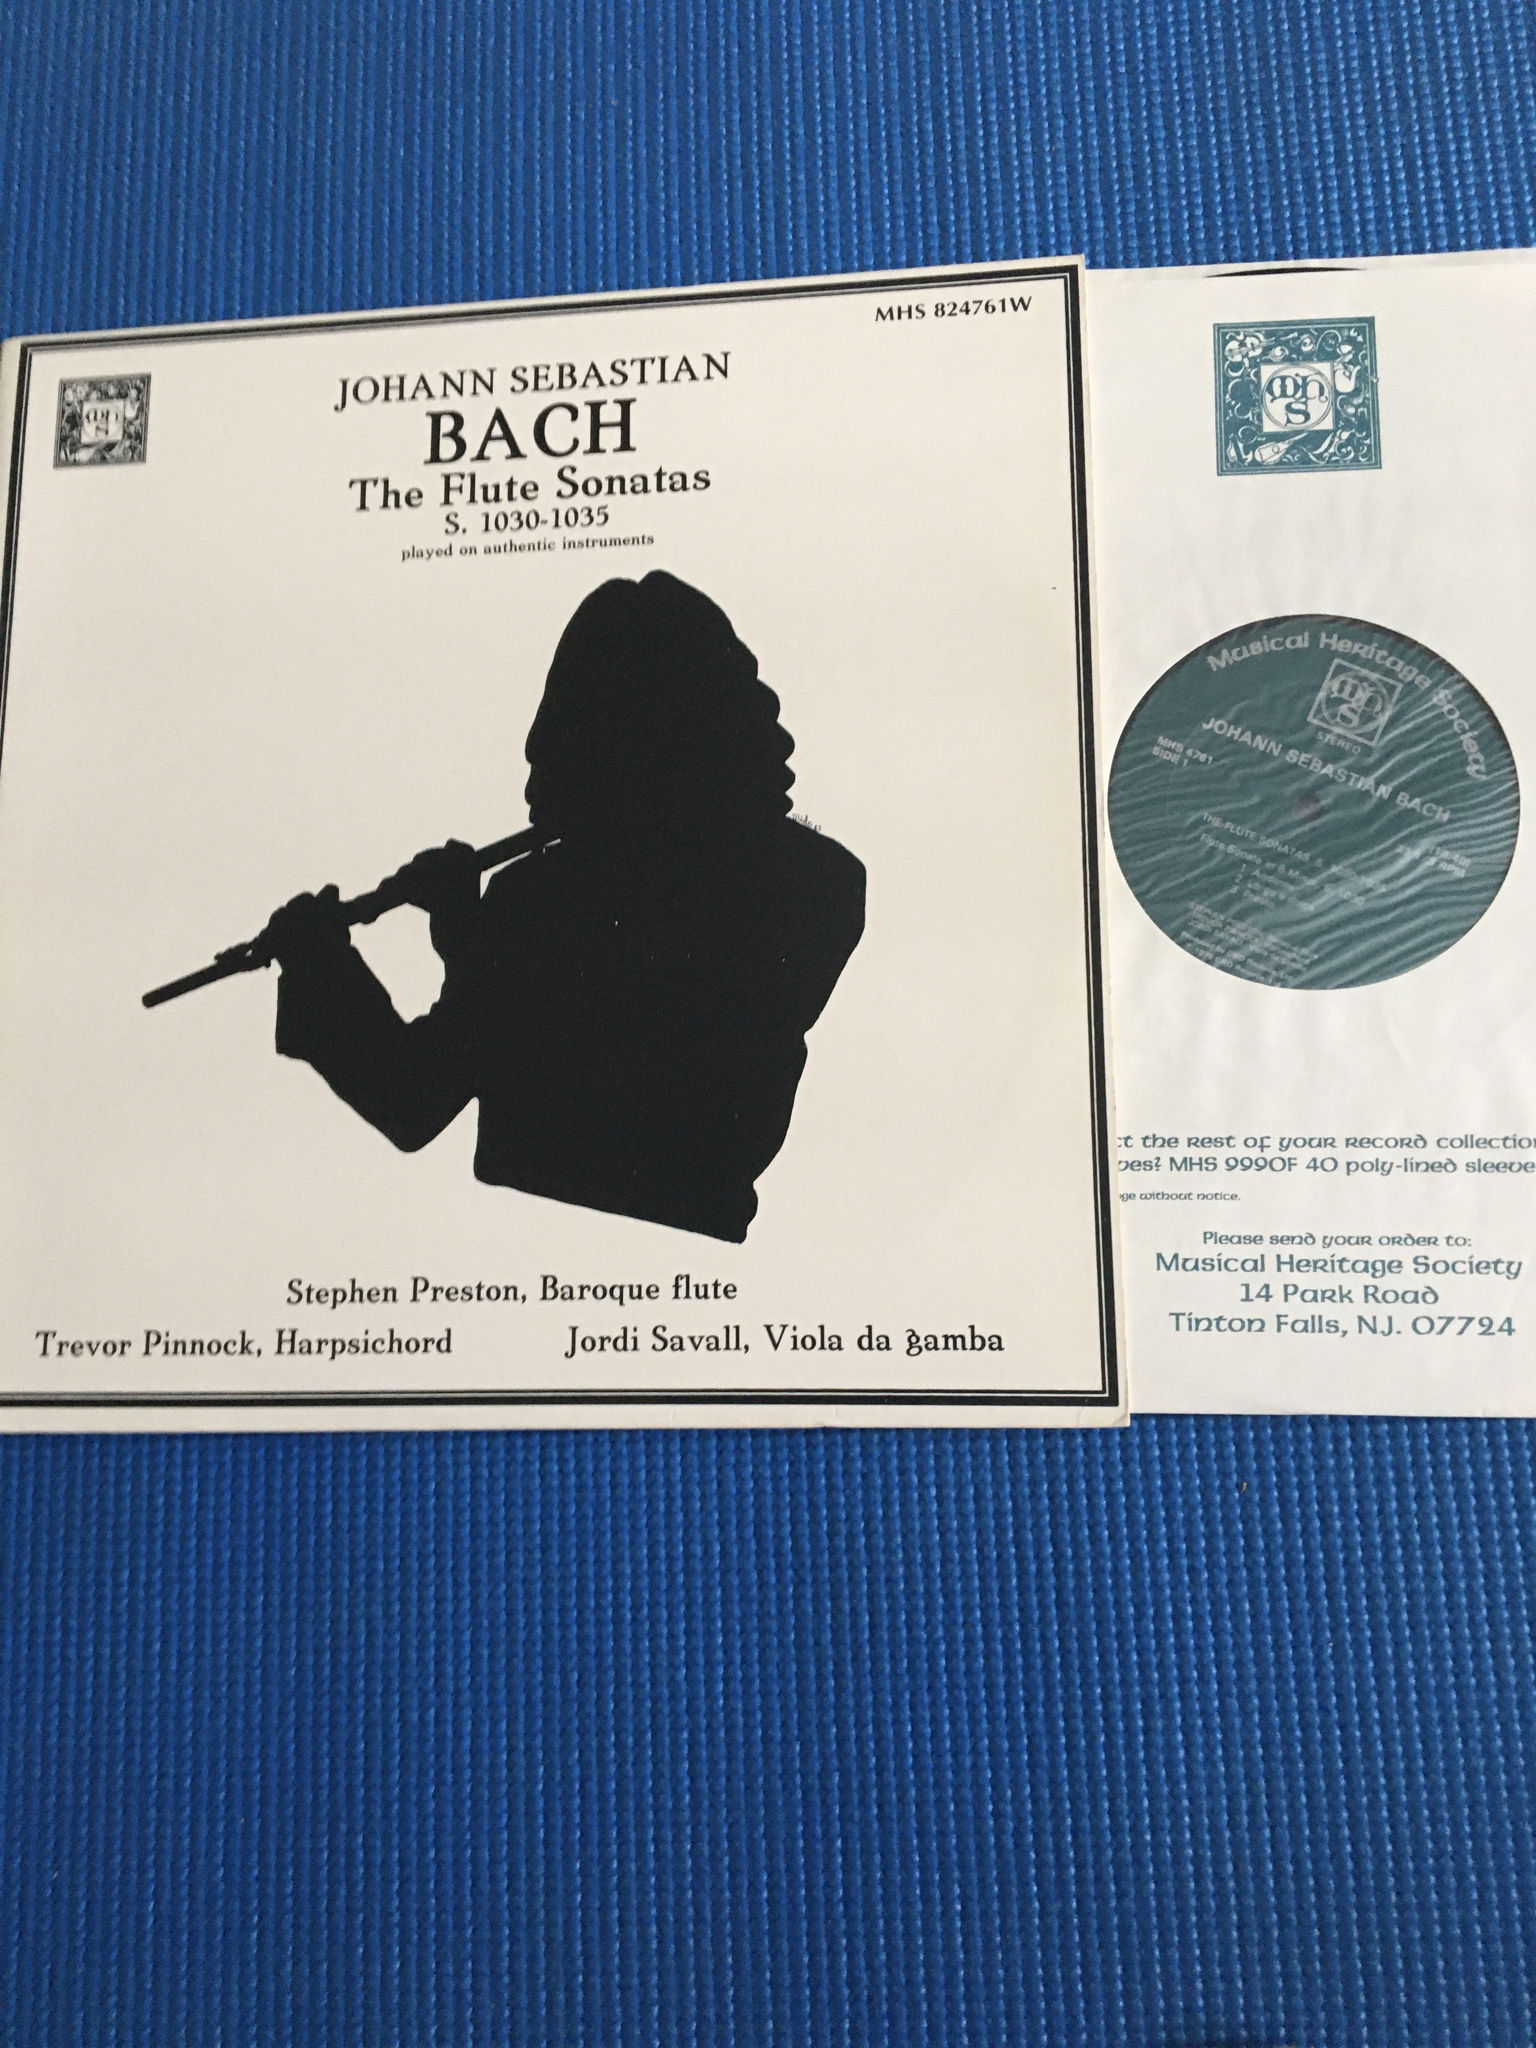 MHS Bach the Flute Sonatas S 1030-1035  Double Lp recor... 3